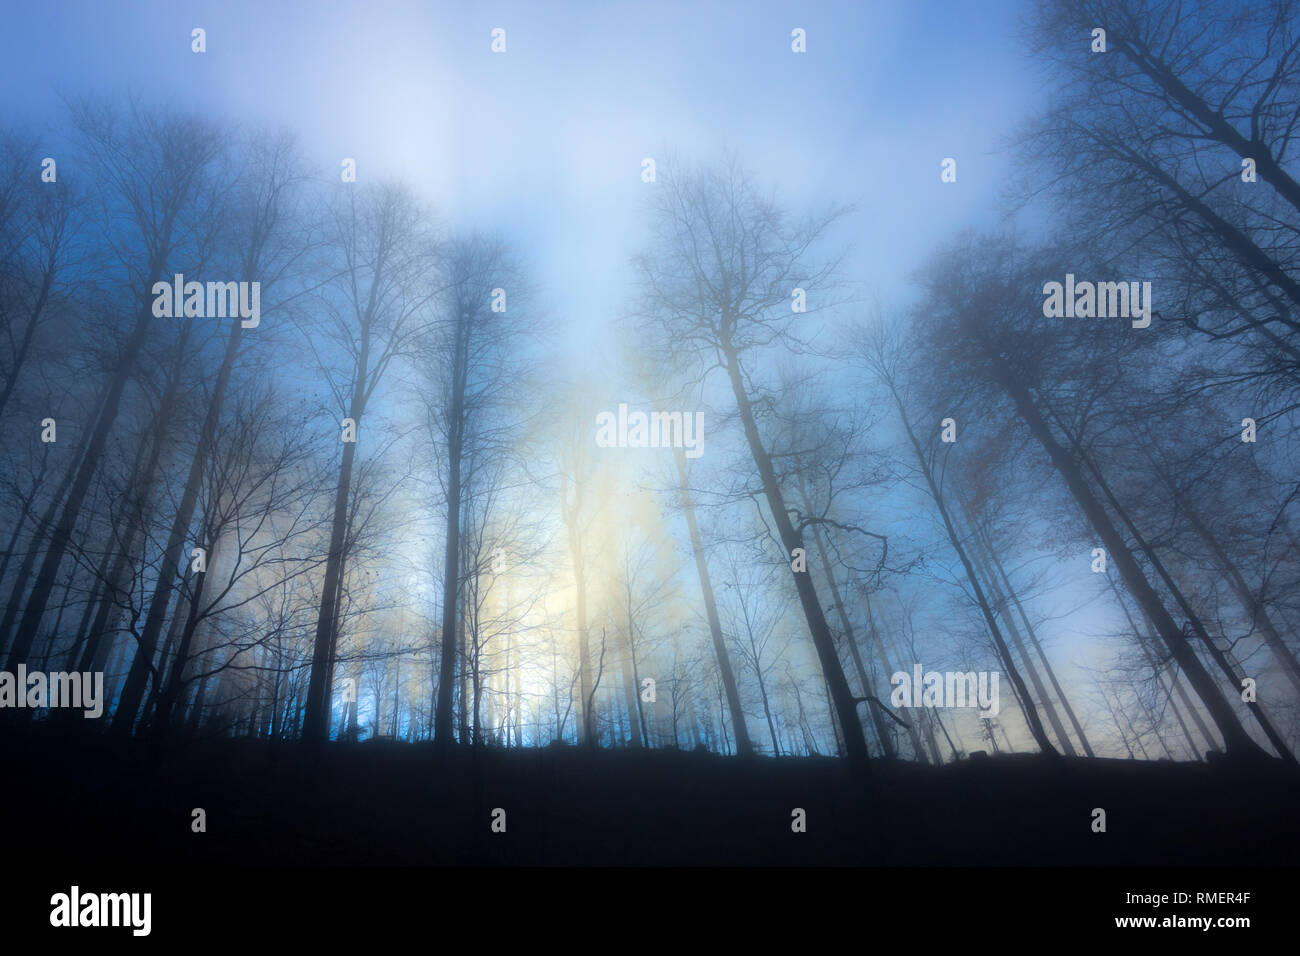 Gruppo di alberi senza foglie, gettando ombre in blu e giallo luce misty e una atmosfera di nebbia generando un mistero e in qualche modo la sensazione di freddo Foto Stock